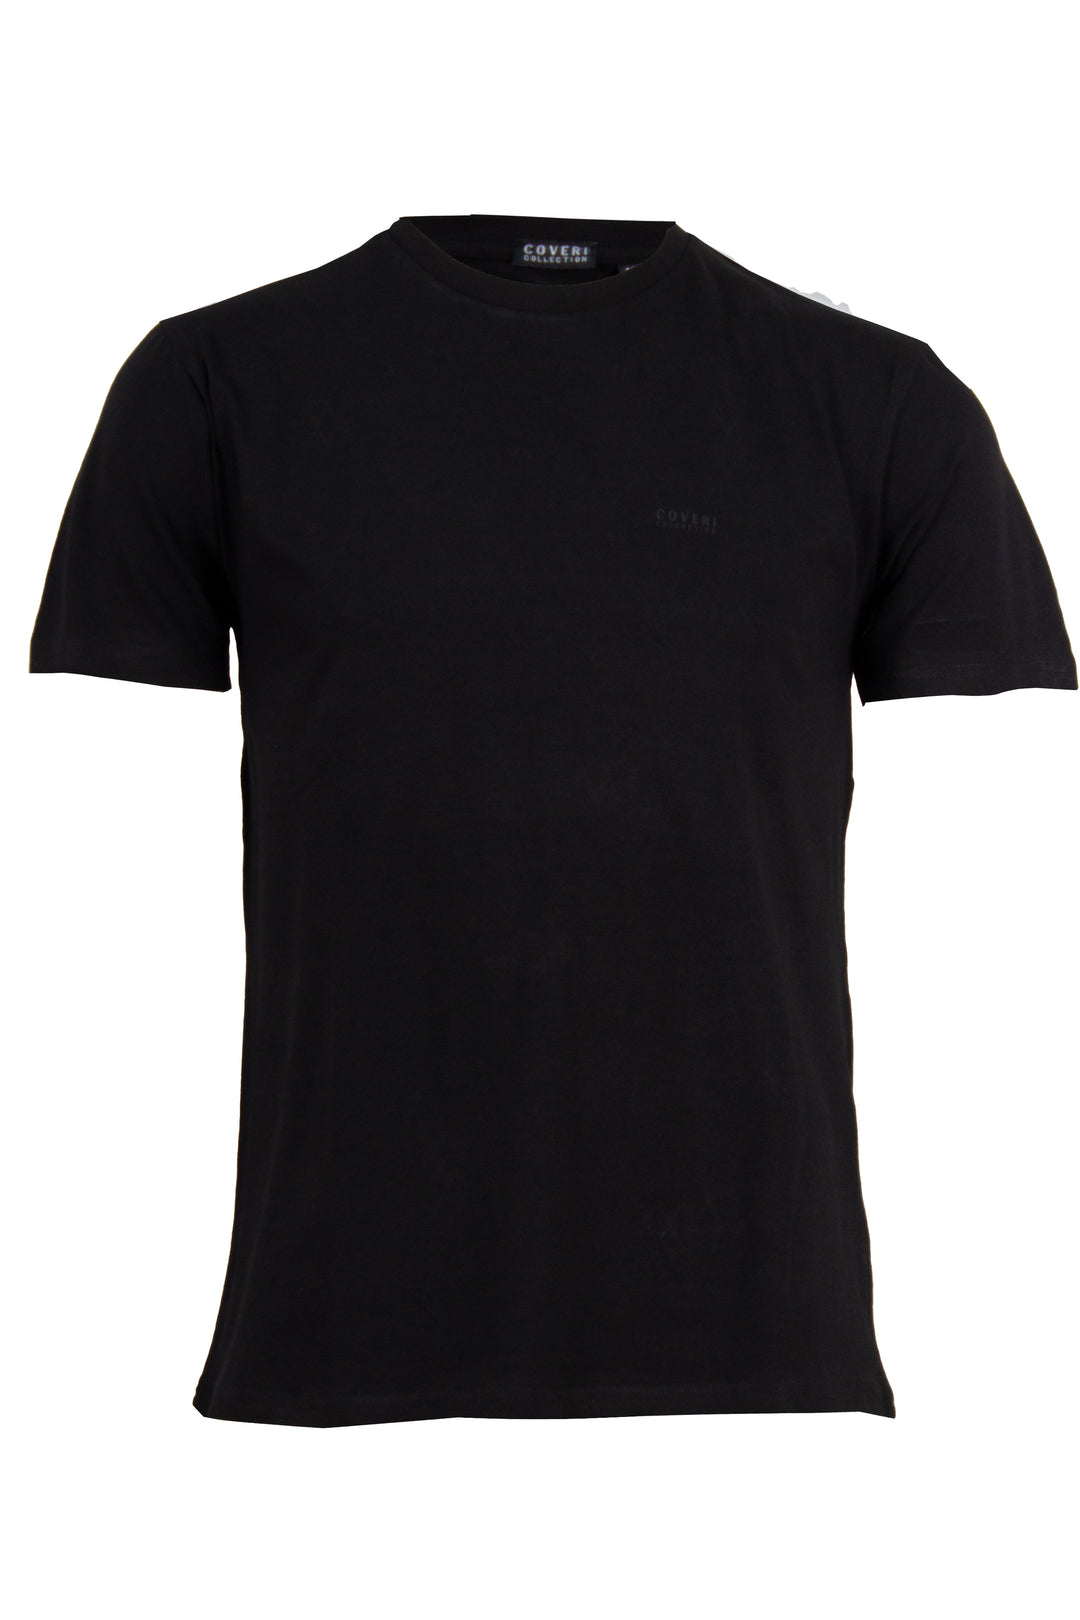 T-shirt girocollo in cotone elasticizzato